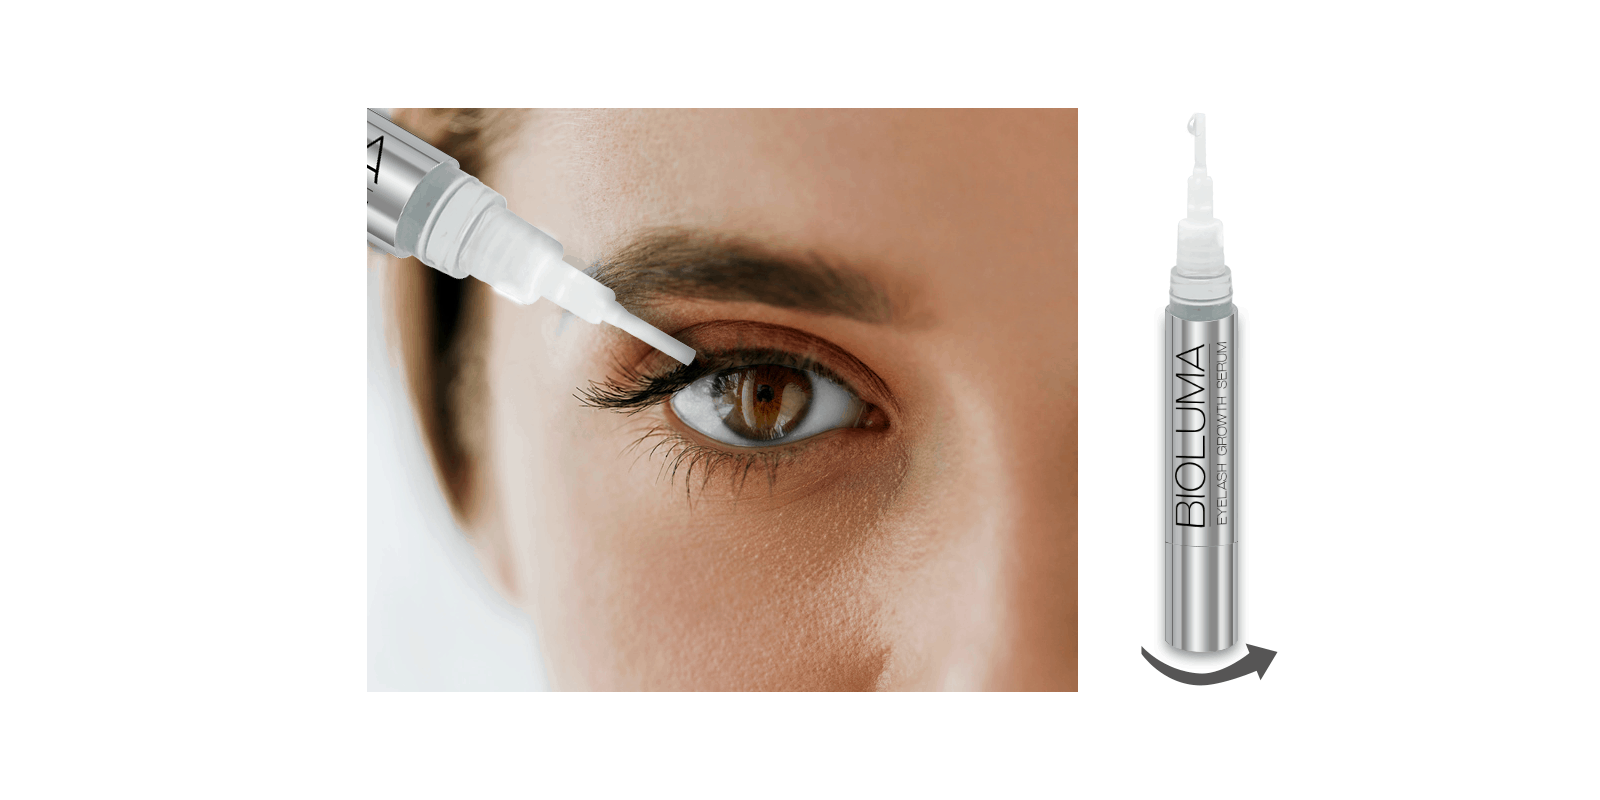 Bioluma Eyelash growth serum side effects